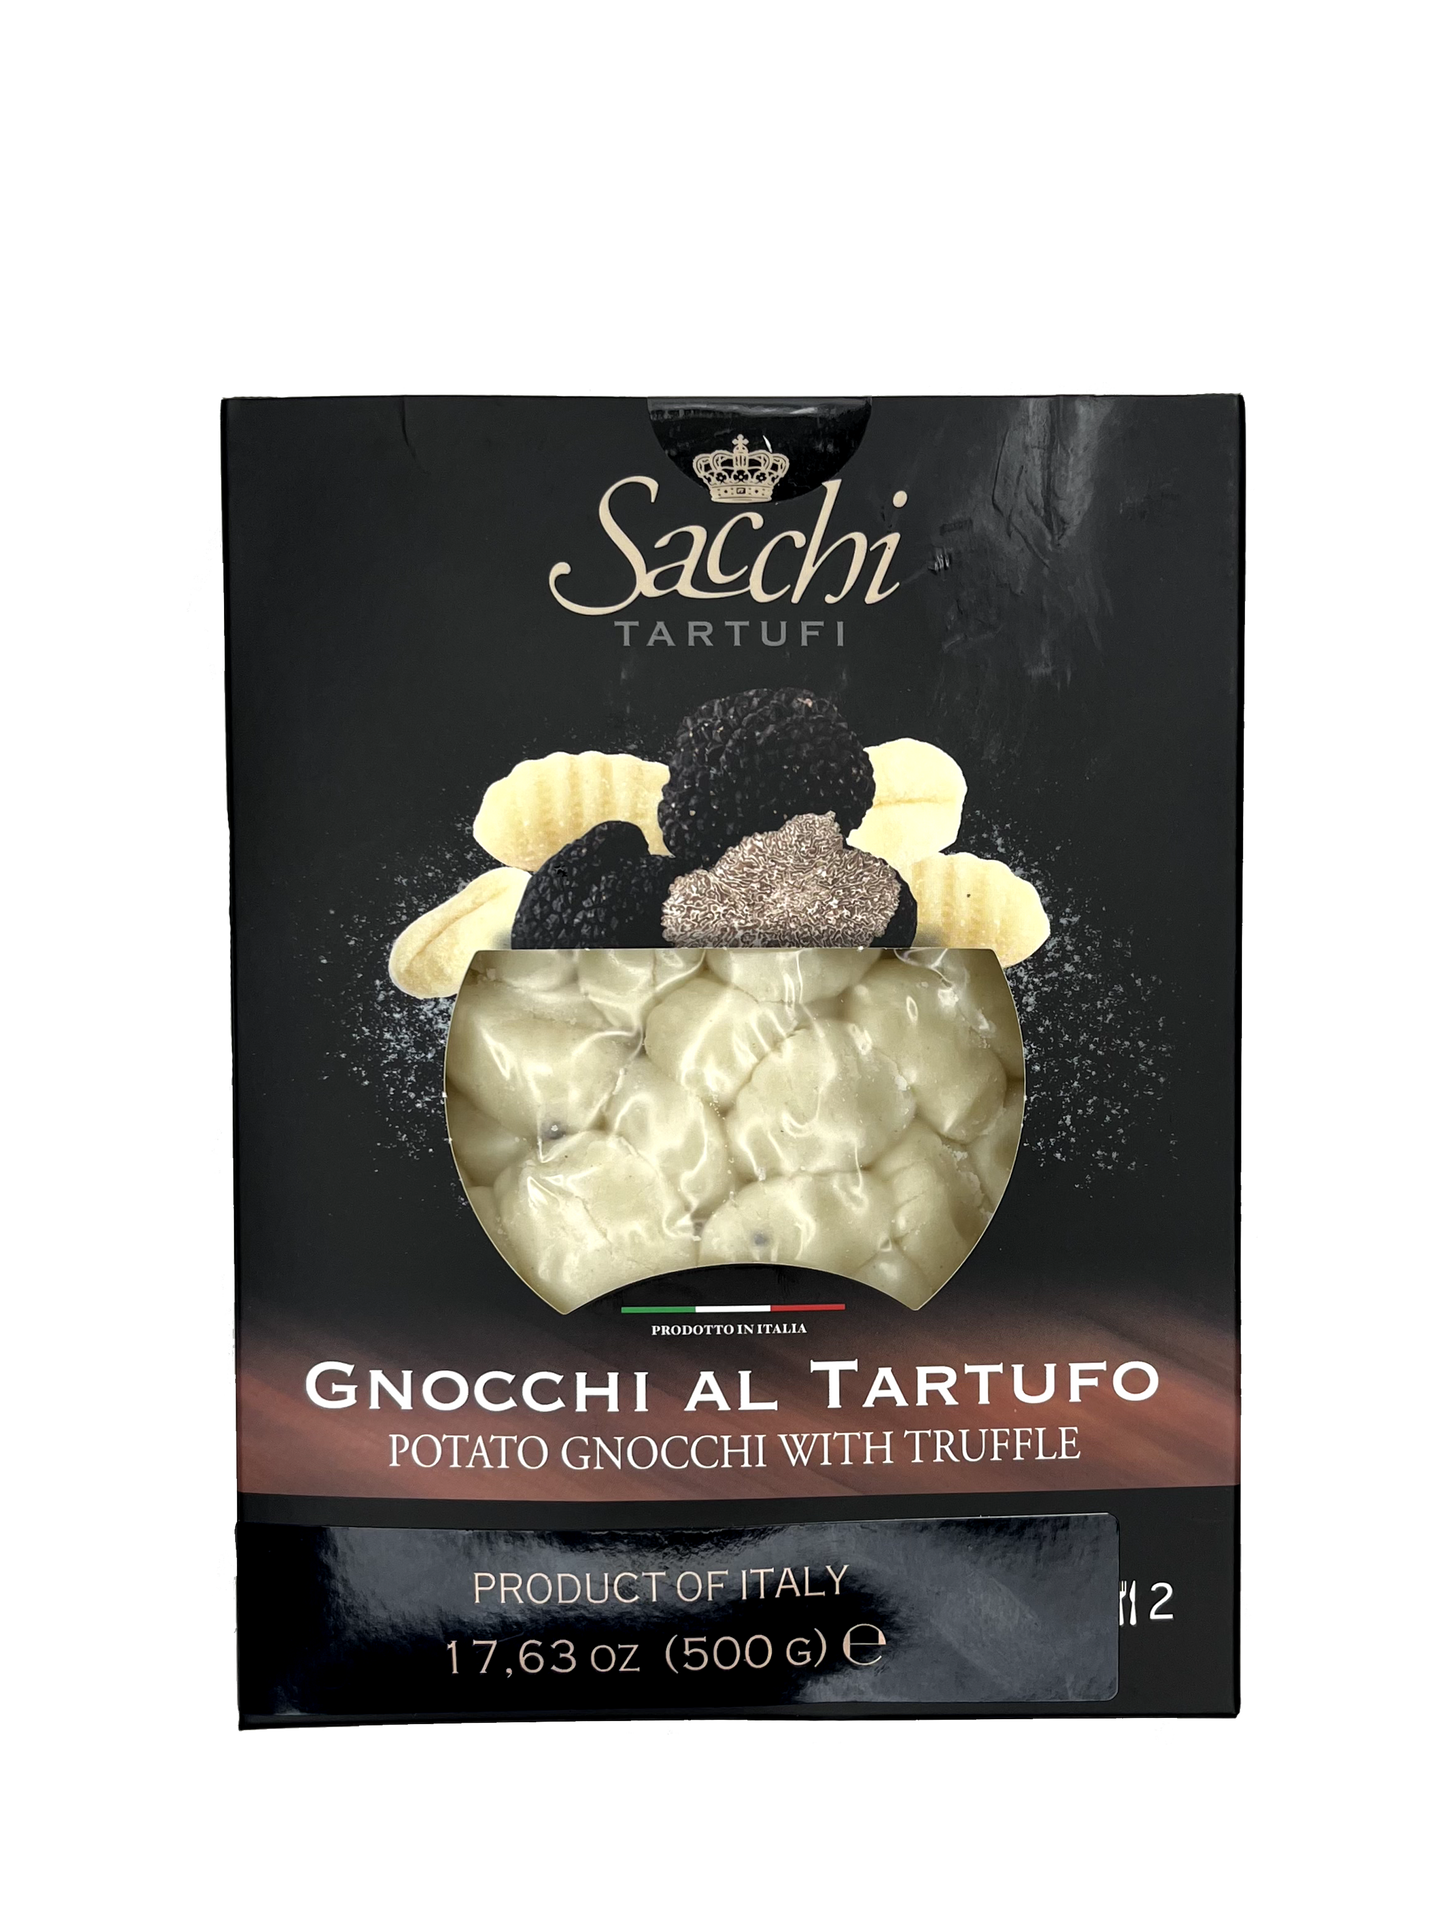 Gnocchi al Tartufo Sacchi tartufi